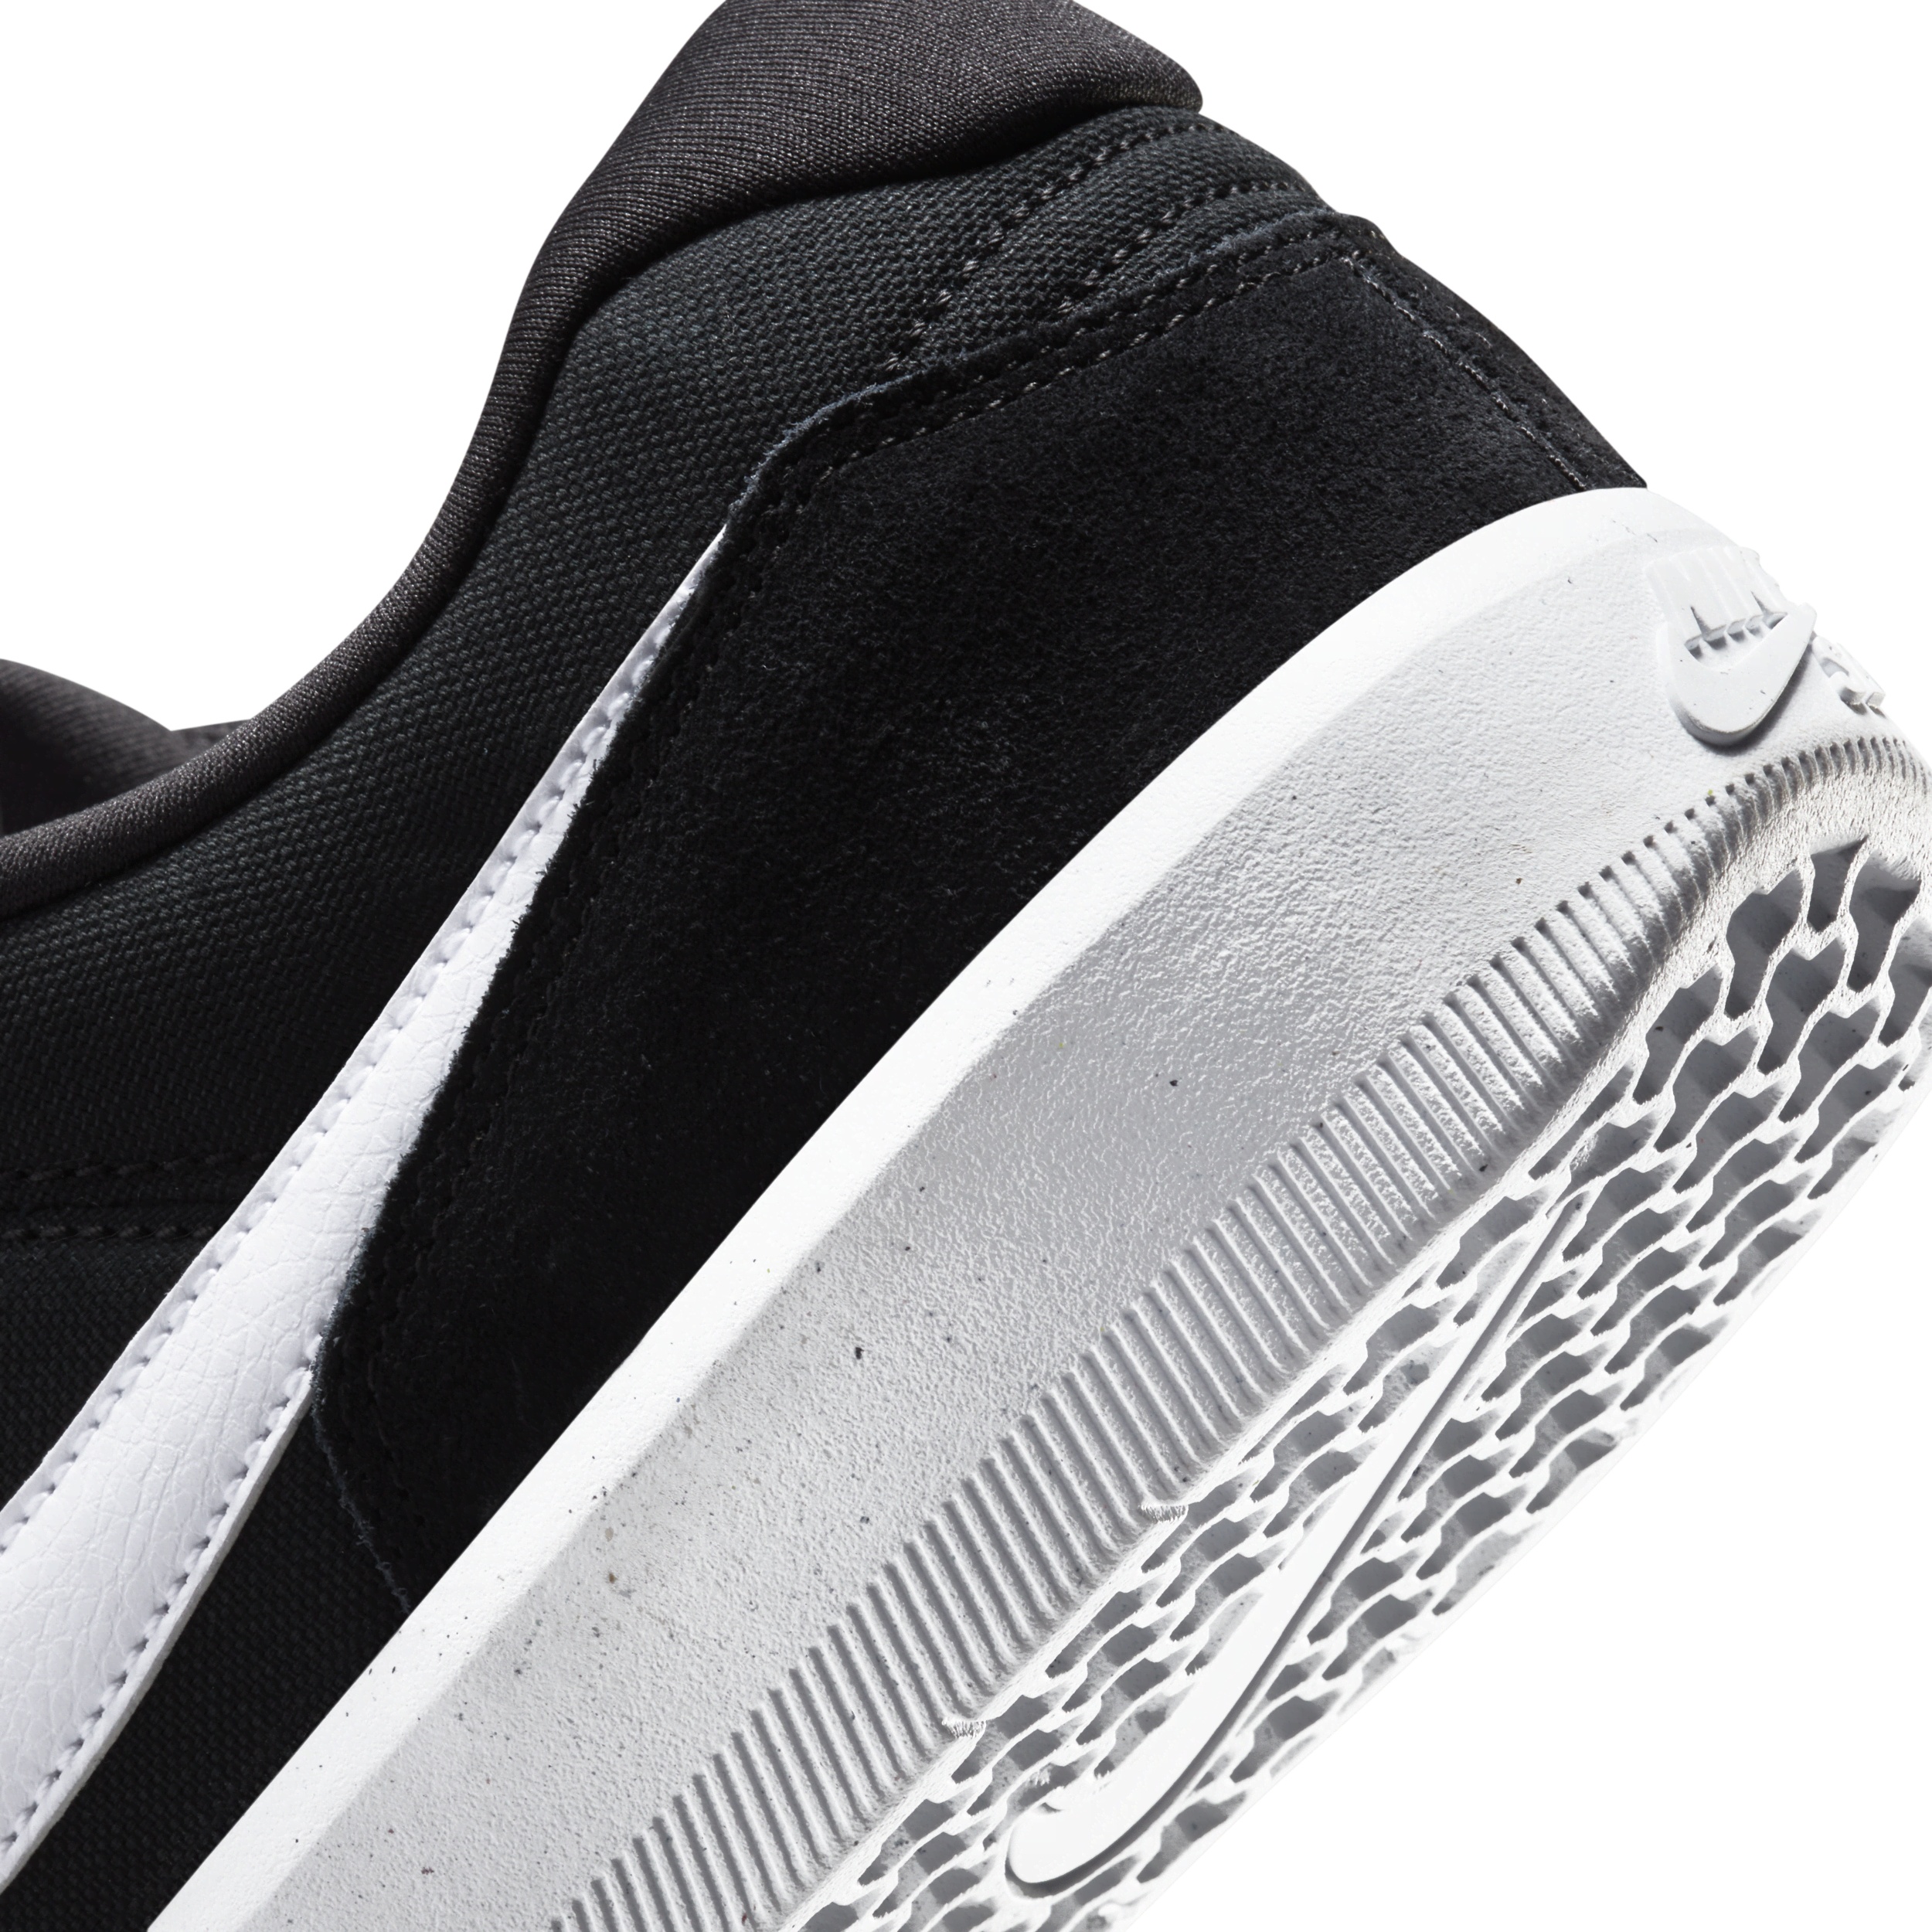 Unisex Nike SB Force 58 Skate Shoes - 8